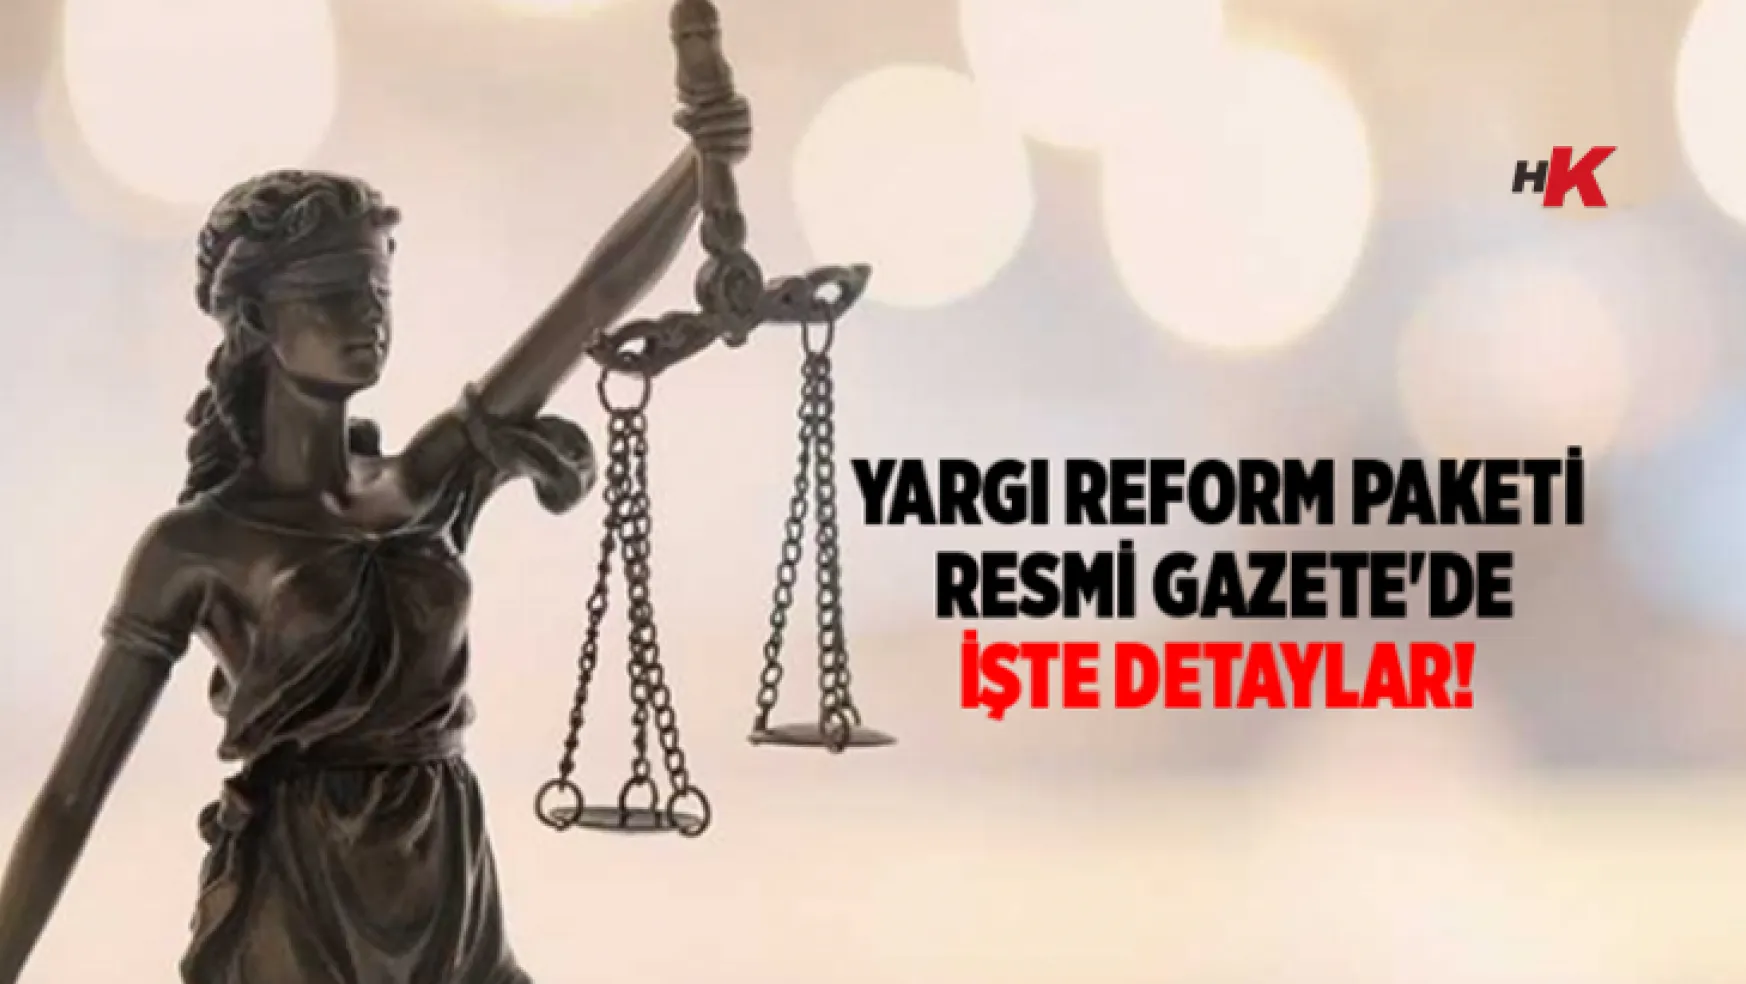 Yargı reform paketi Resmi Gazete'de İşte detayları ve ayrıntıları!